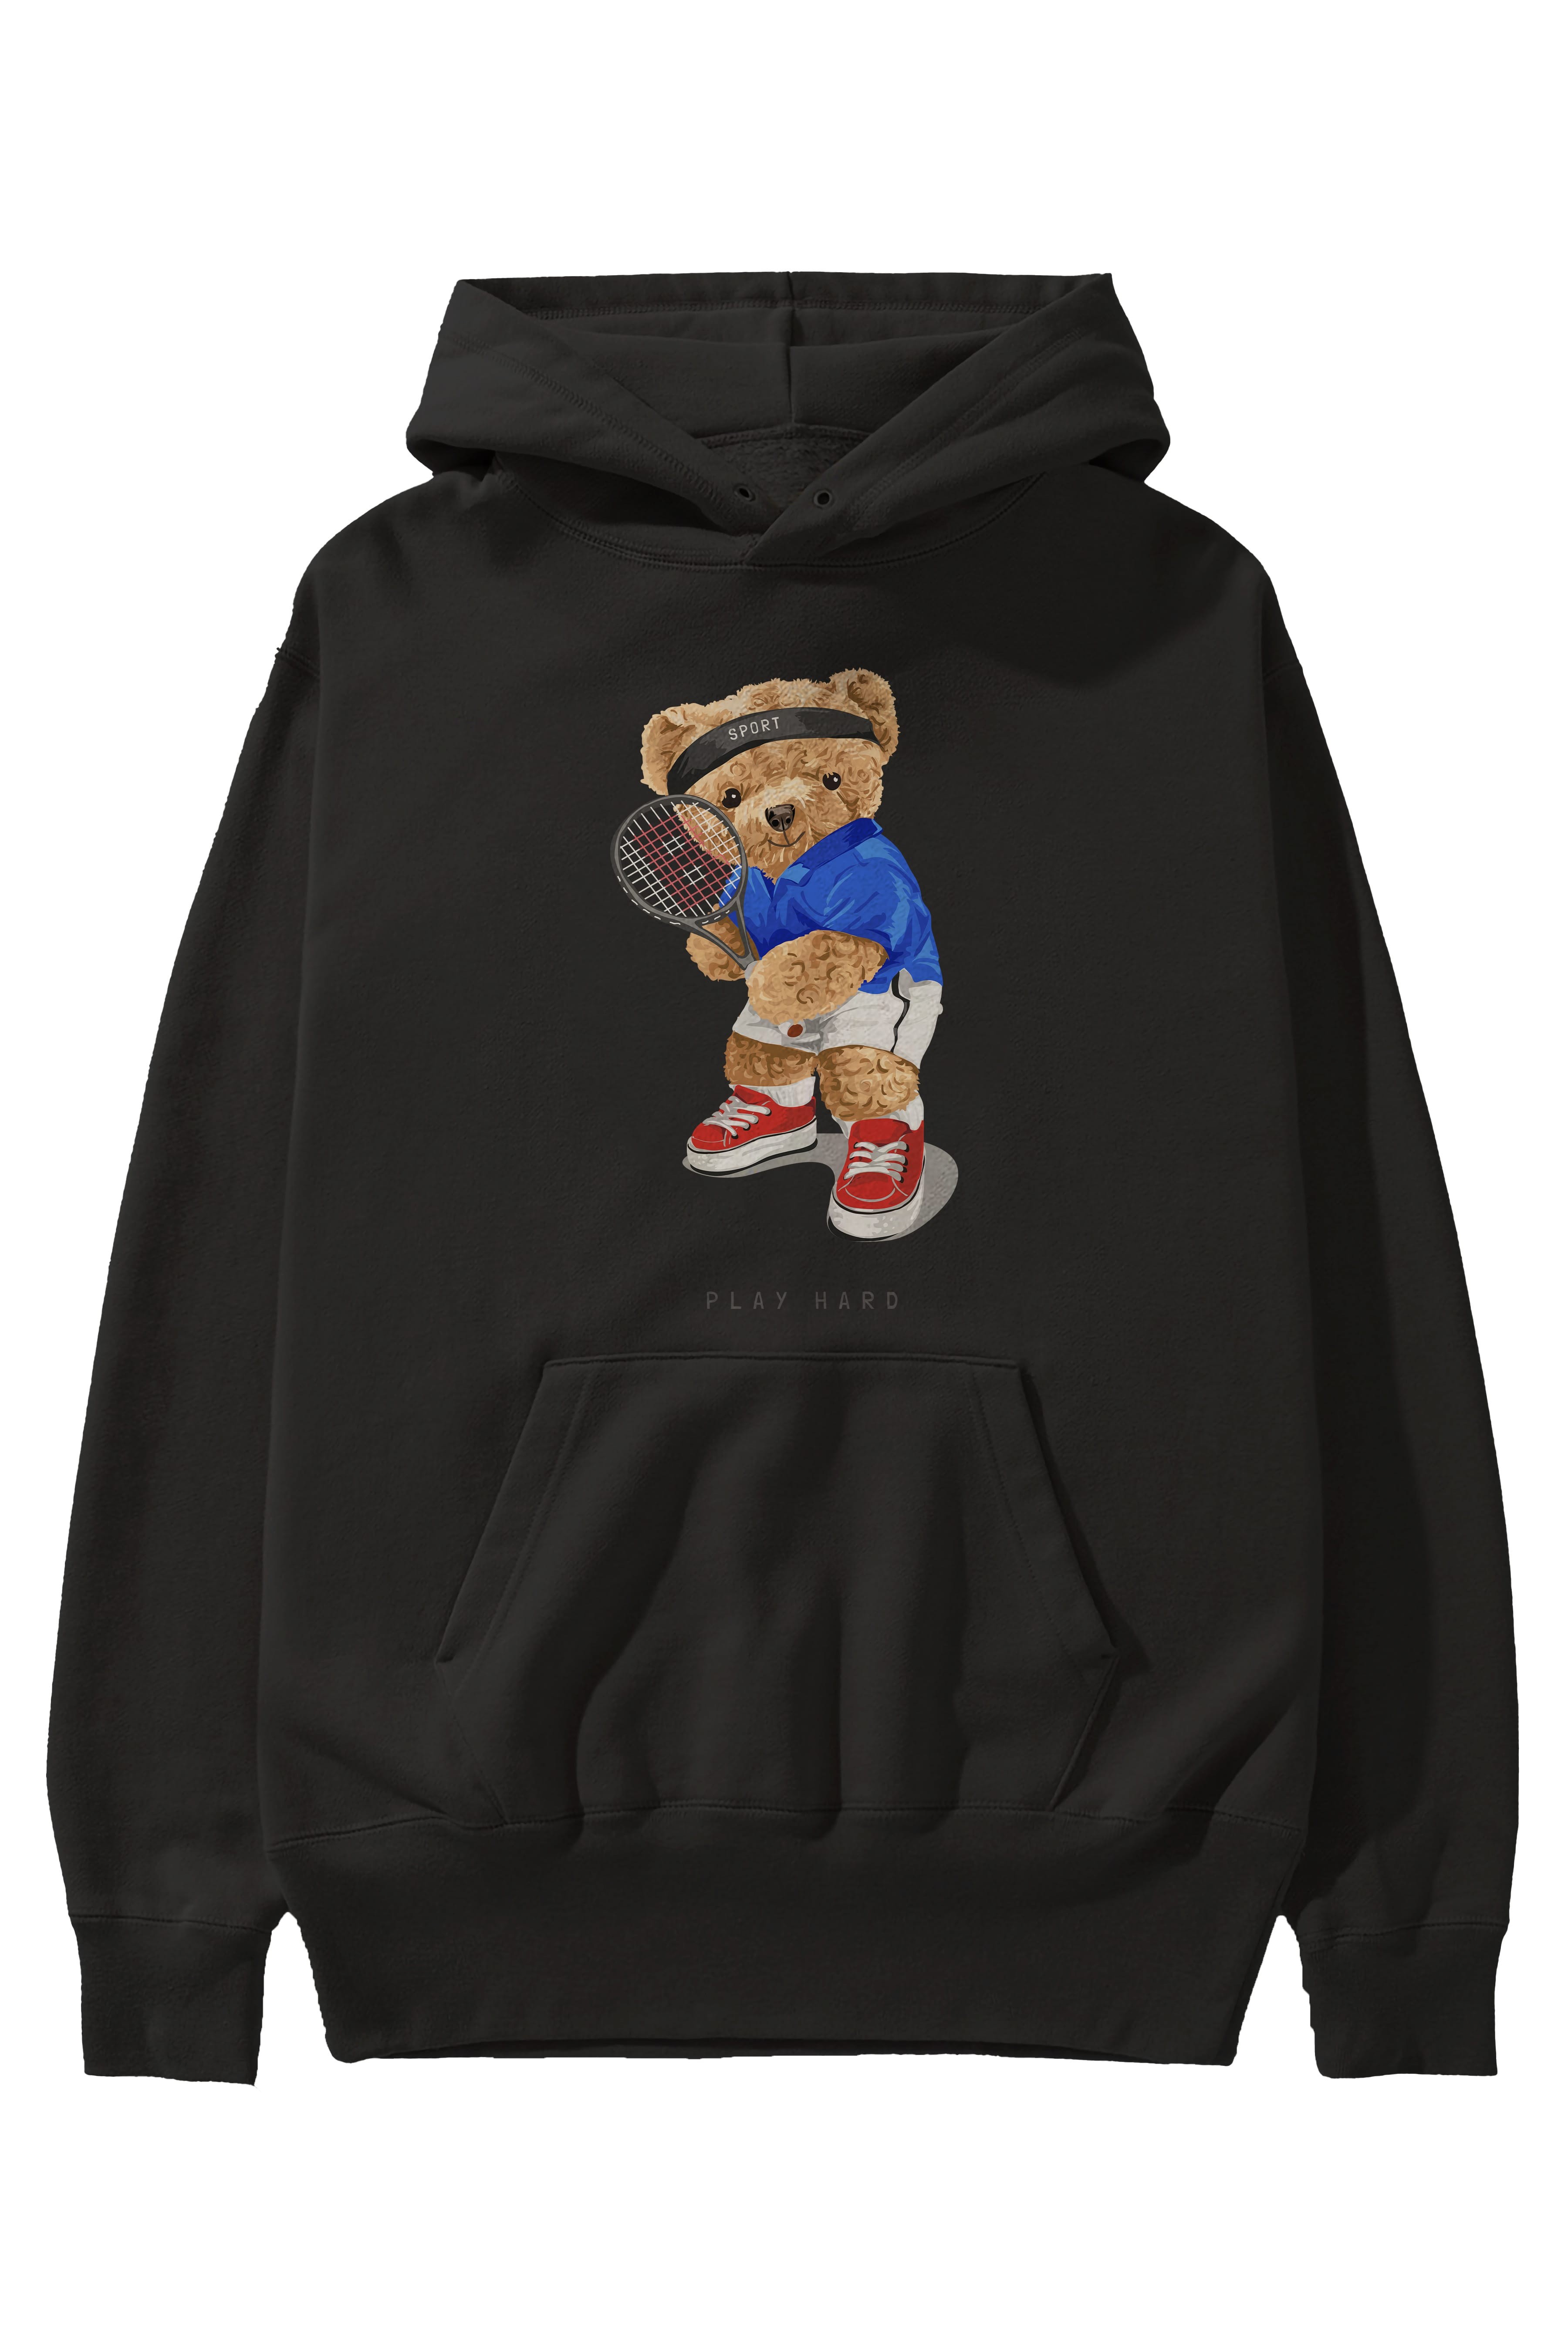 Teddy Bear Play Hard Ön Baskılı Hoodie Oversize Kapüşonlu Sweatshirt Erkek Kadın Unisex